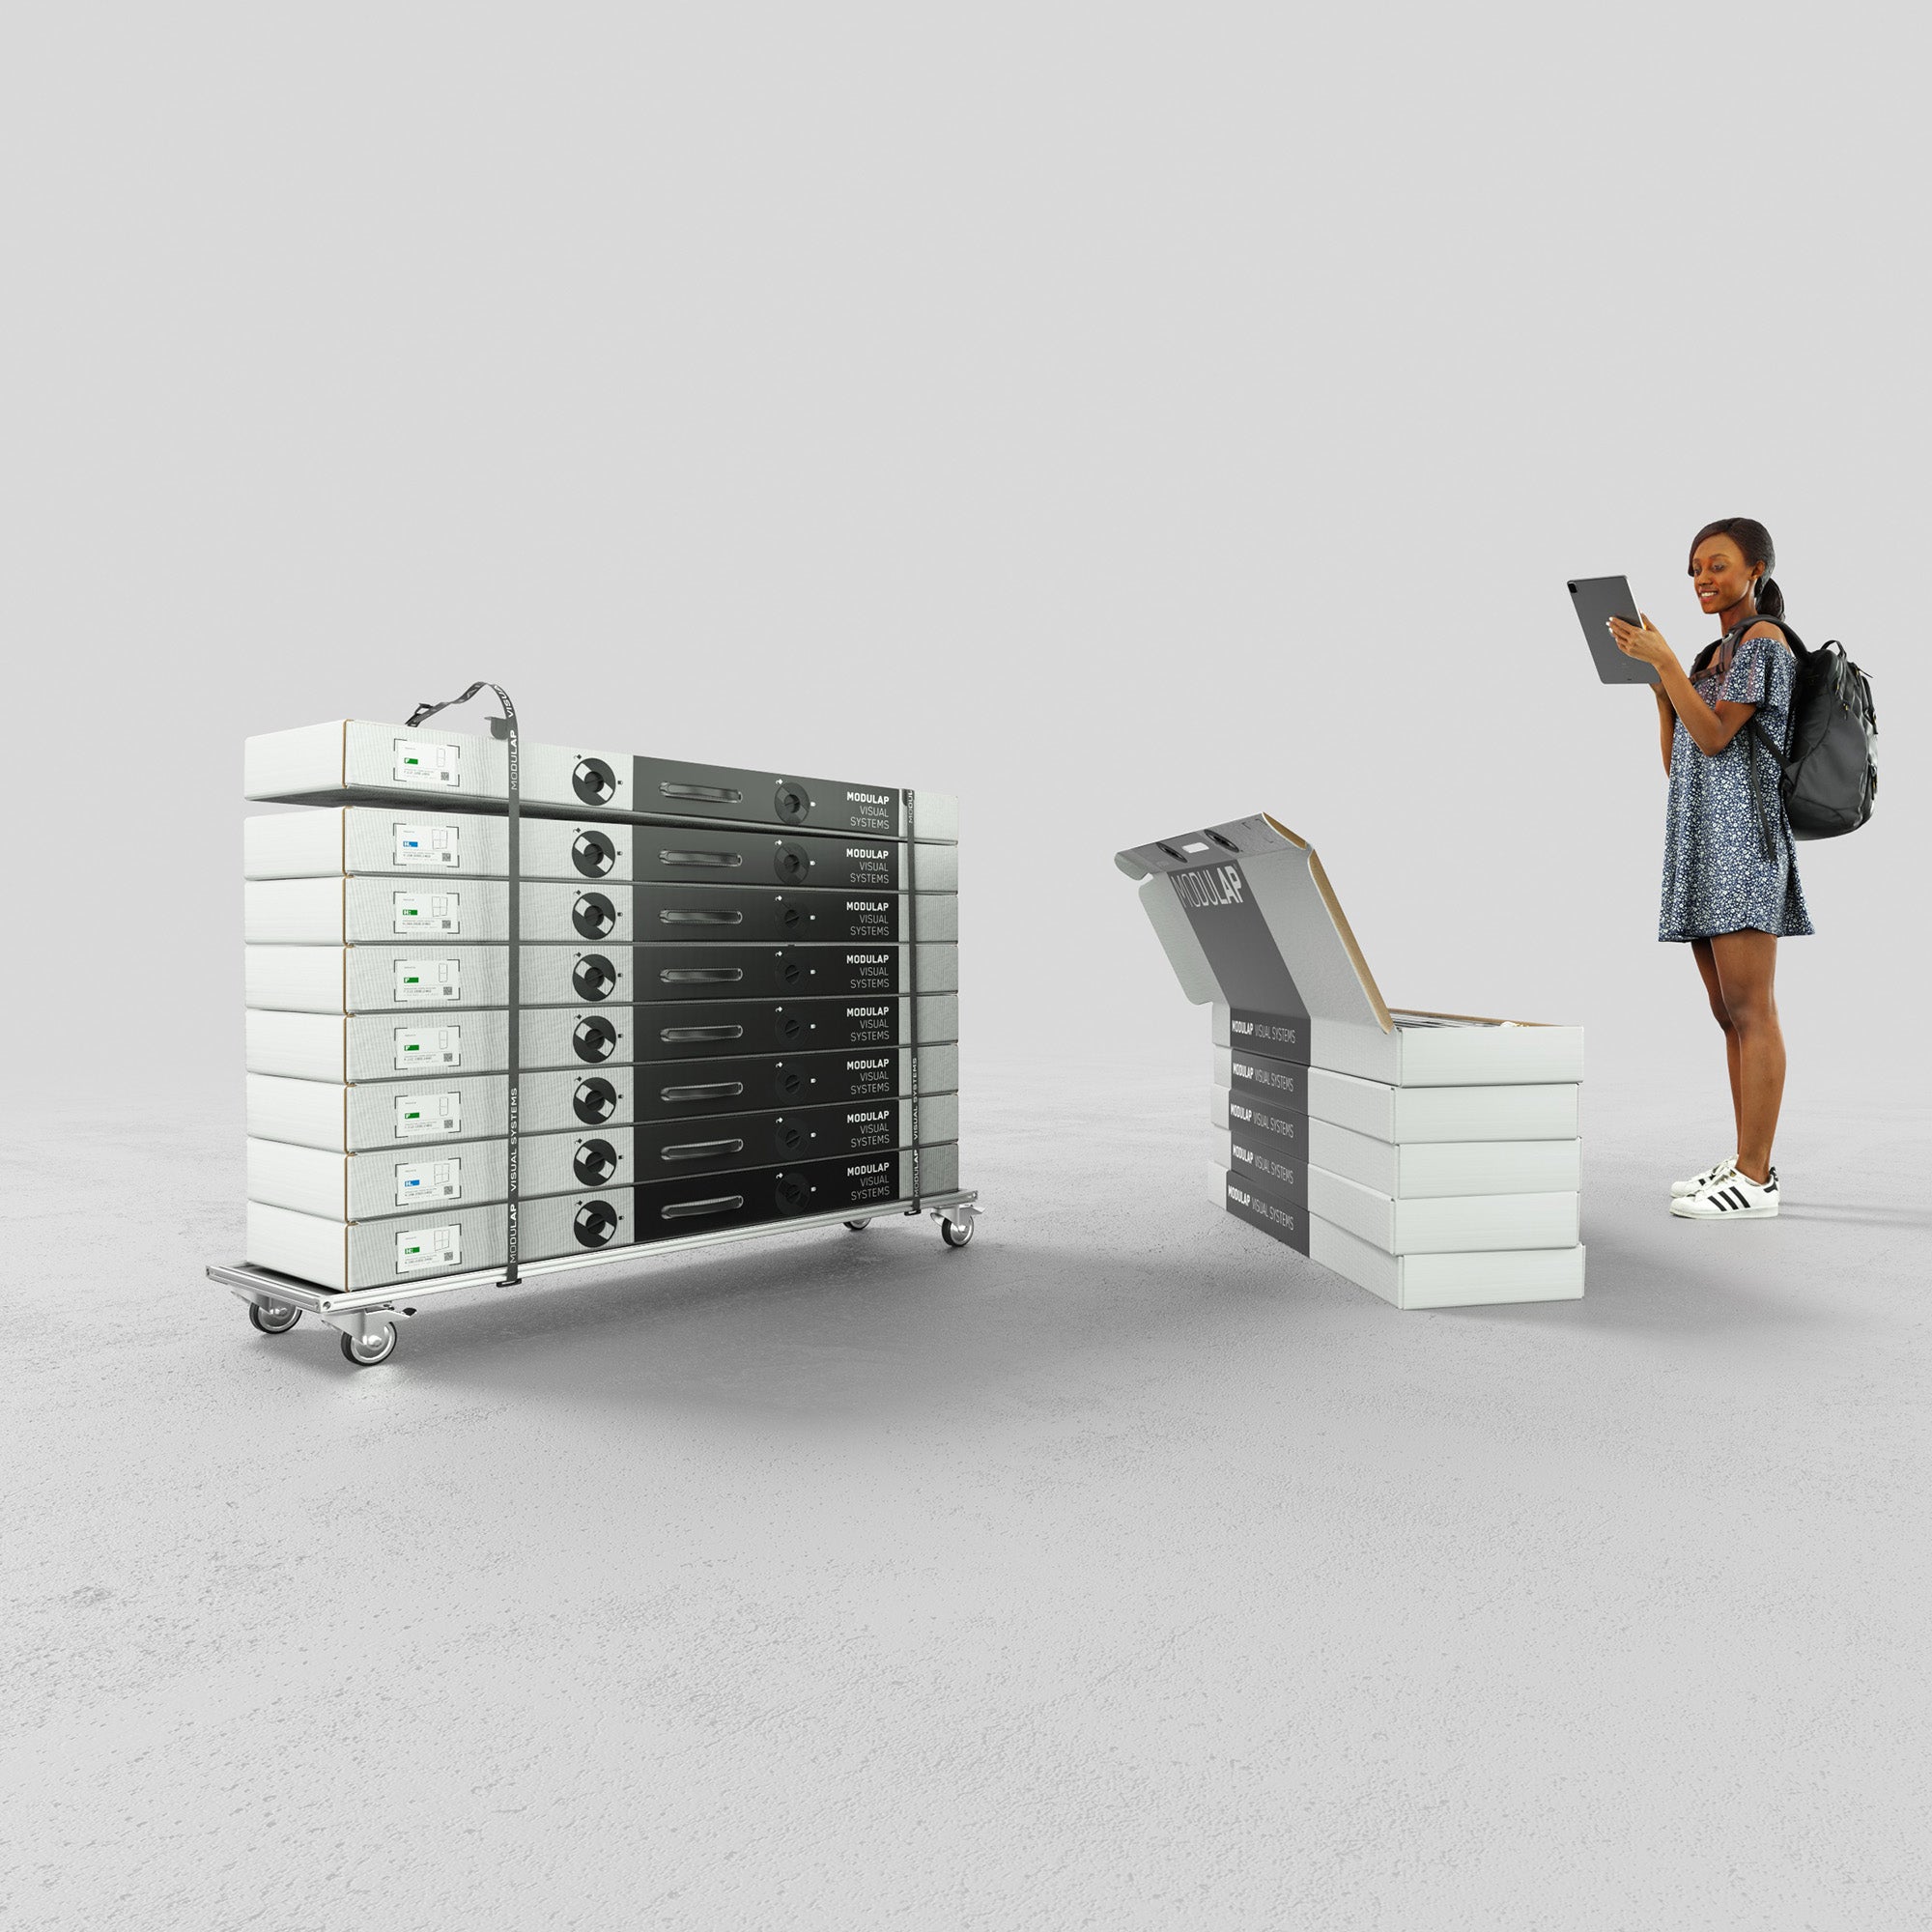 Ein moderner Stand zeigt eine Frau, die mit einem Tablet arbeitet, während sie neben gestapelten Systemverpackungen und einem Rollbrett mit gestapelten Modulen steht. Die Szene verdeutlicht die effiziente und organisierte Verpackung und den Transport von Modulap-Systemen.